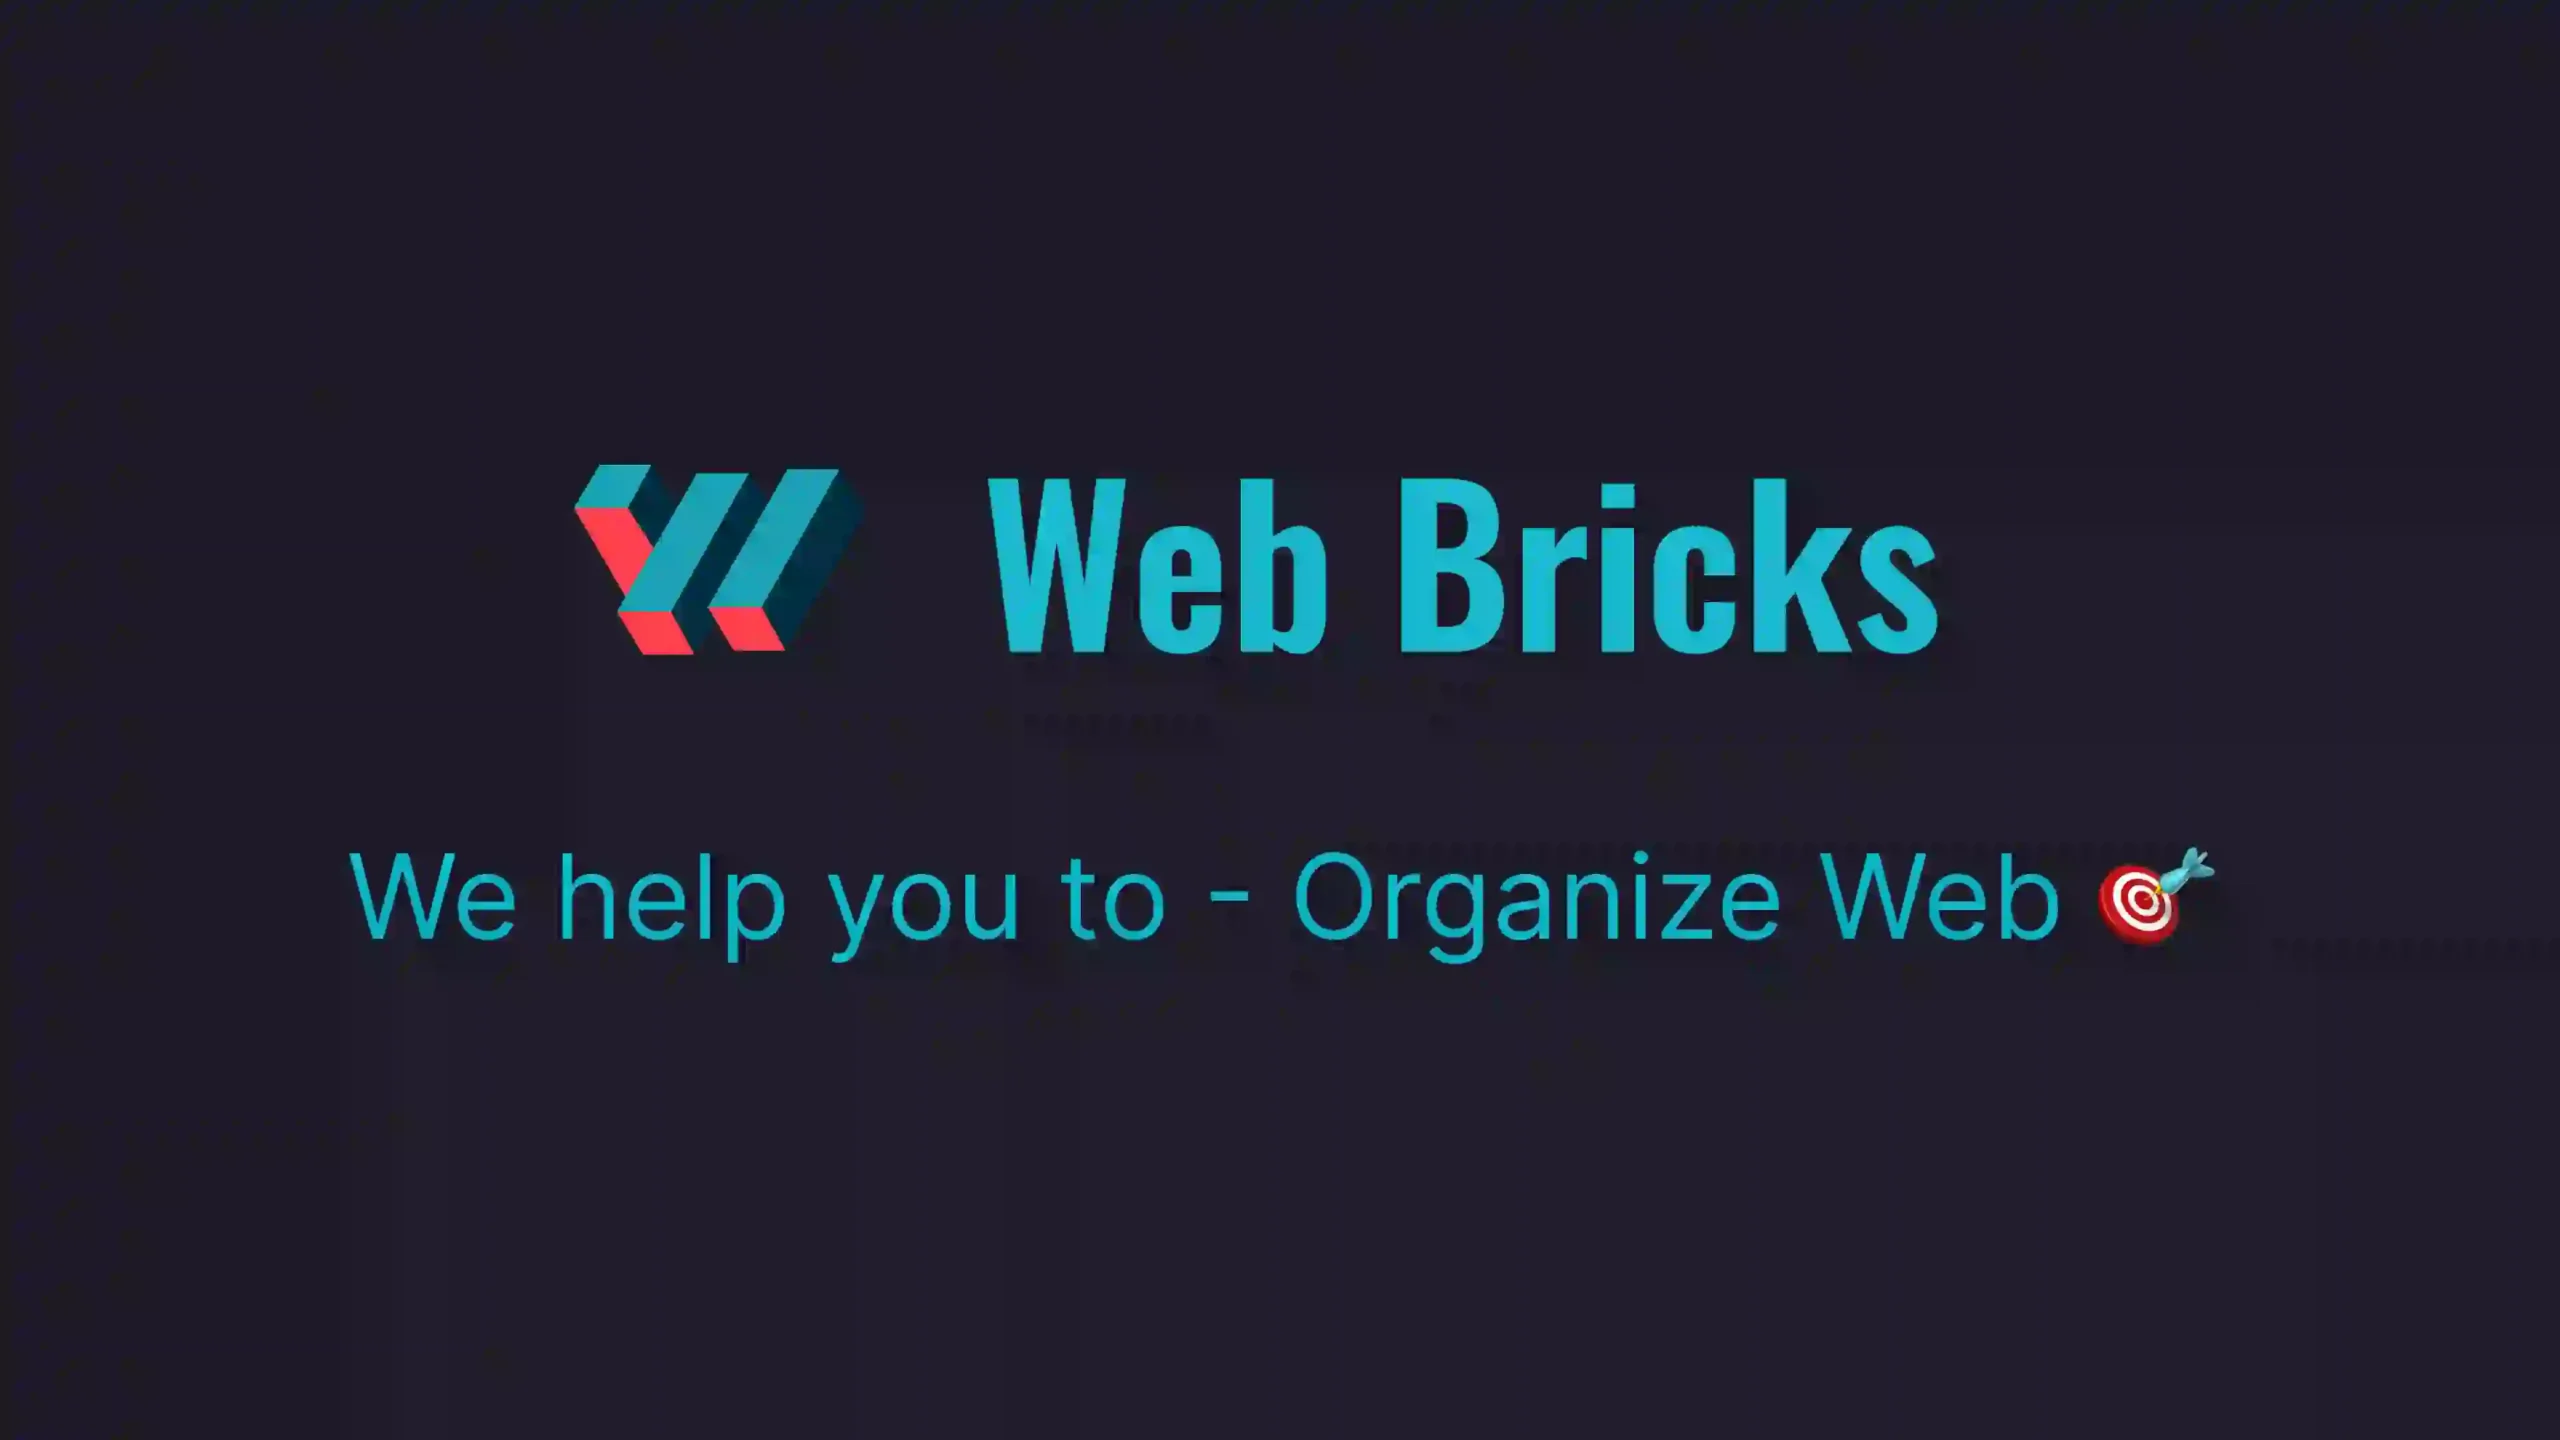 Web Bricks - About Us